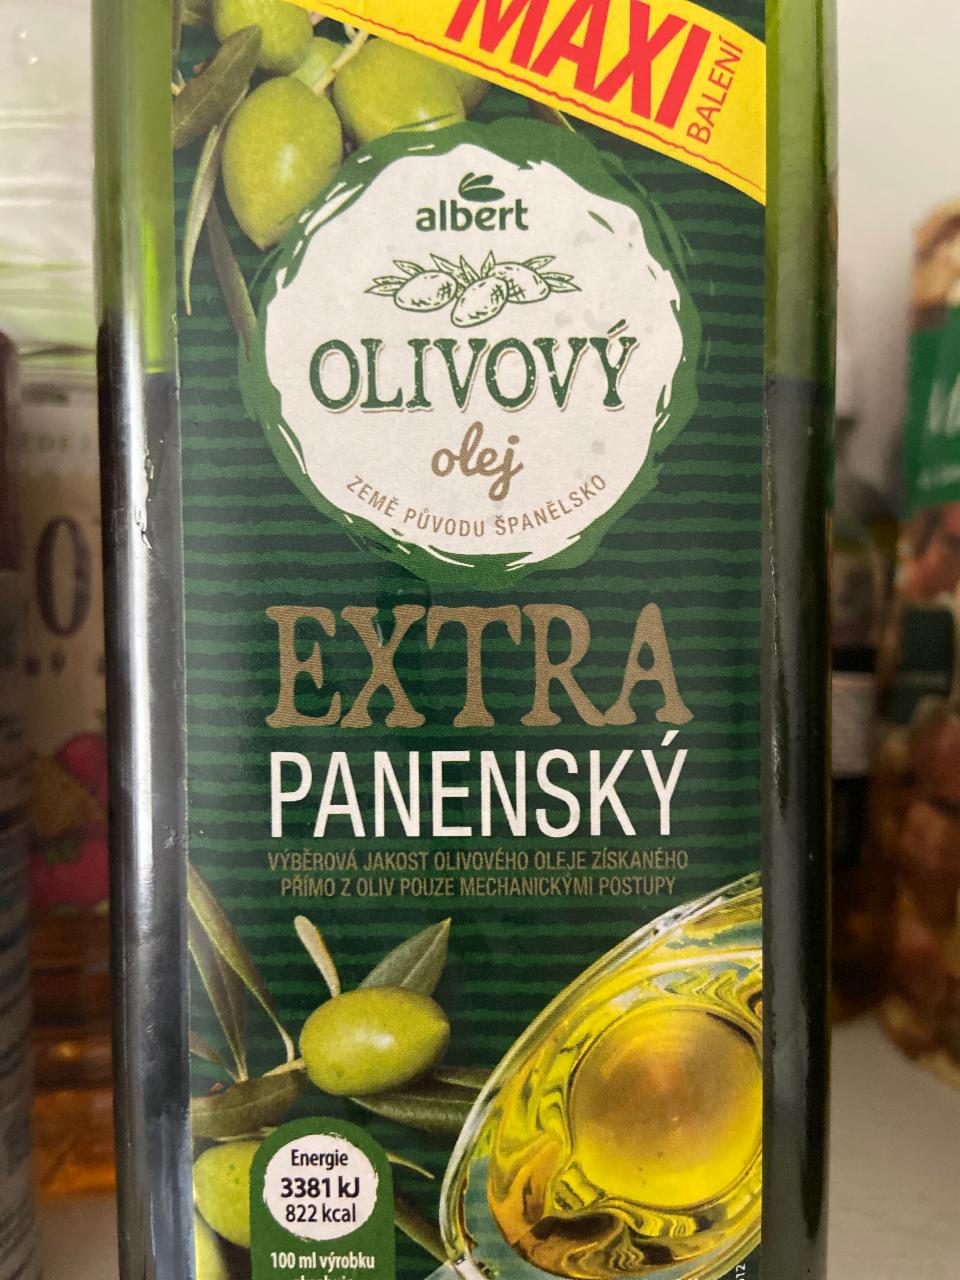 Фото - Olivový olej extra panenský Albert